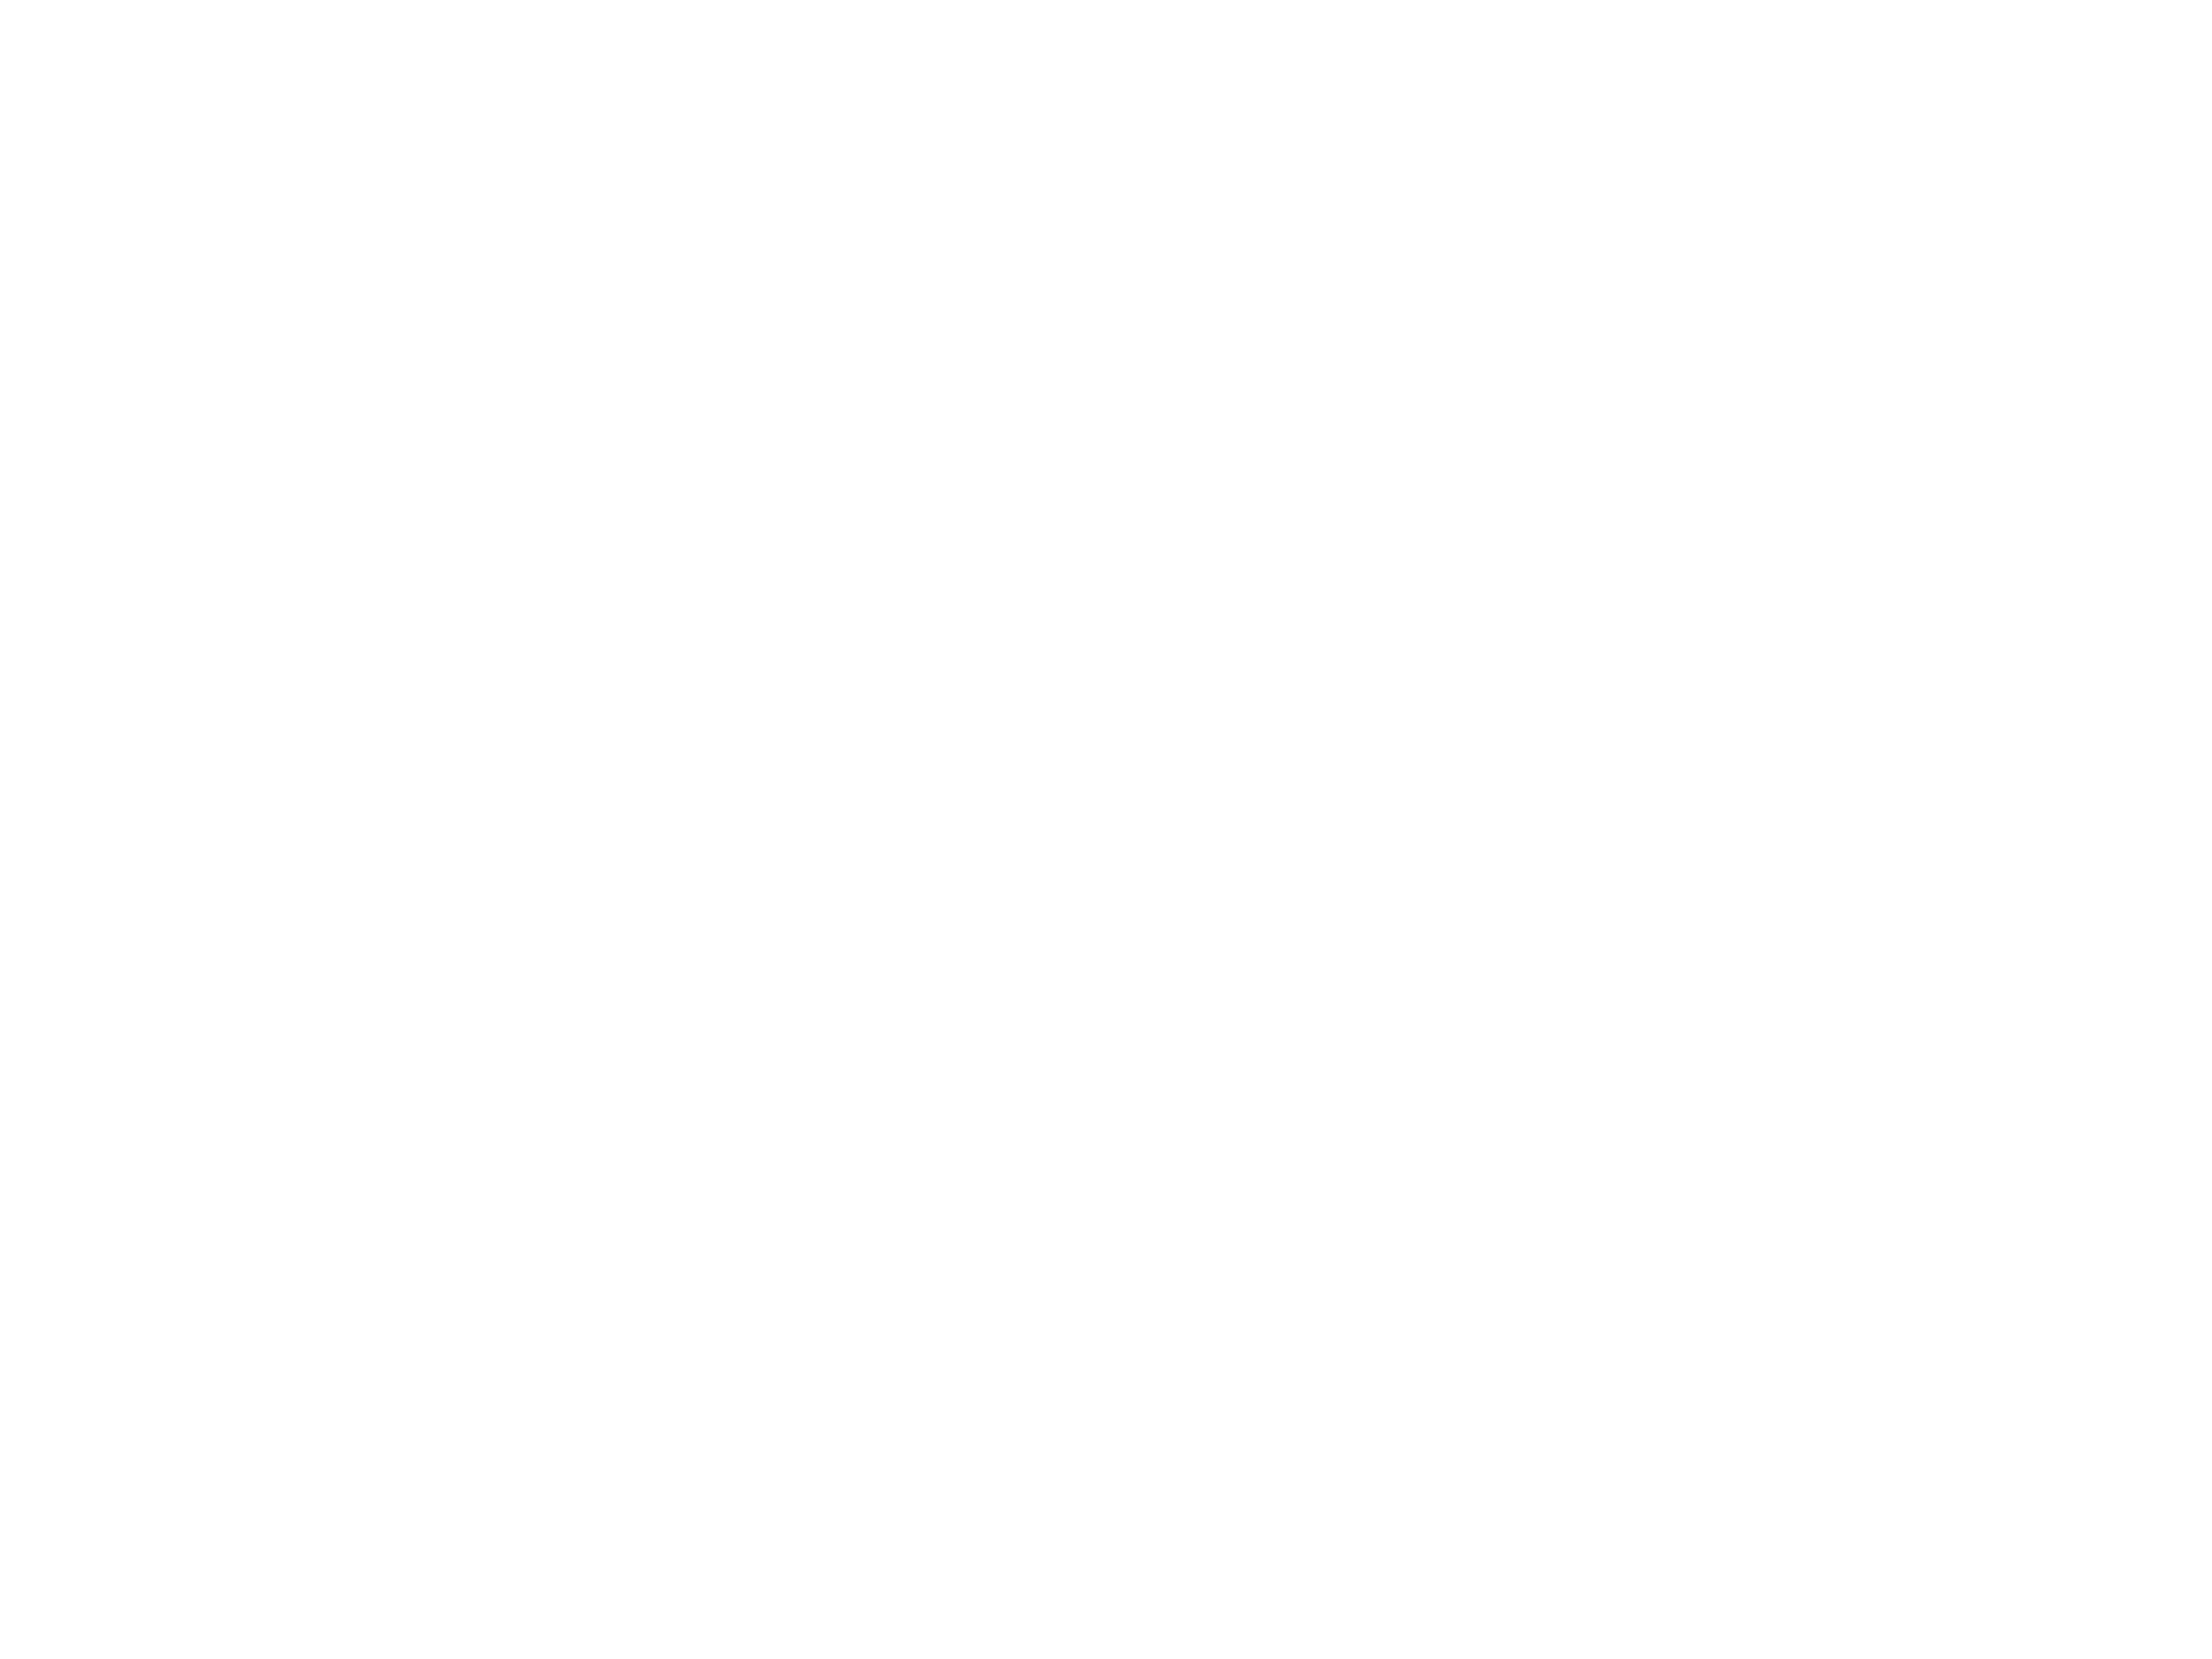 Maren Bella Moon